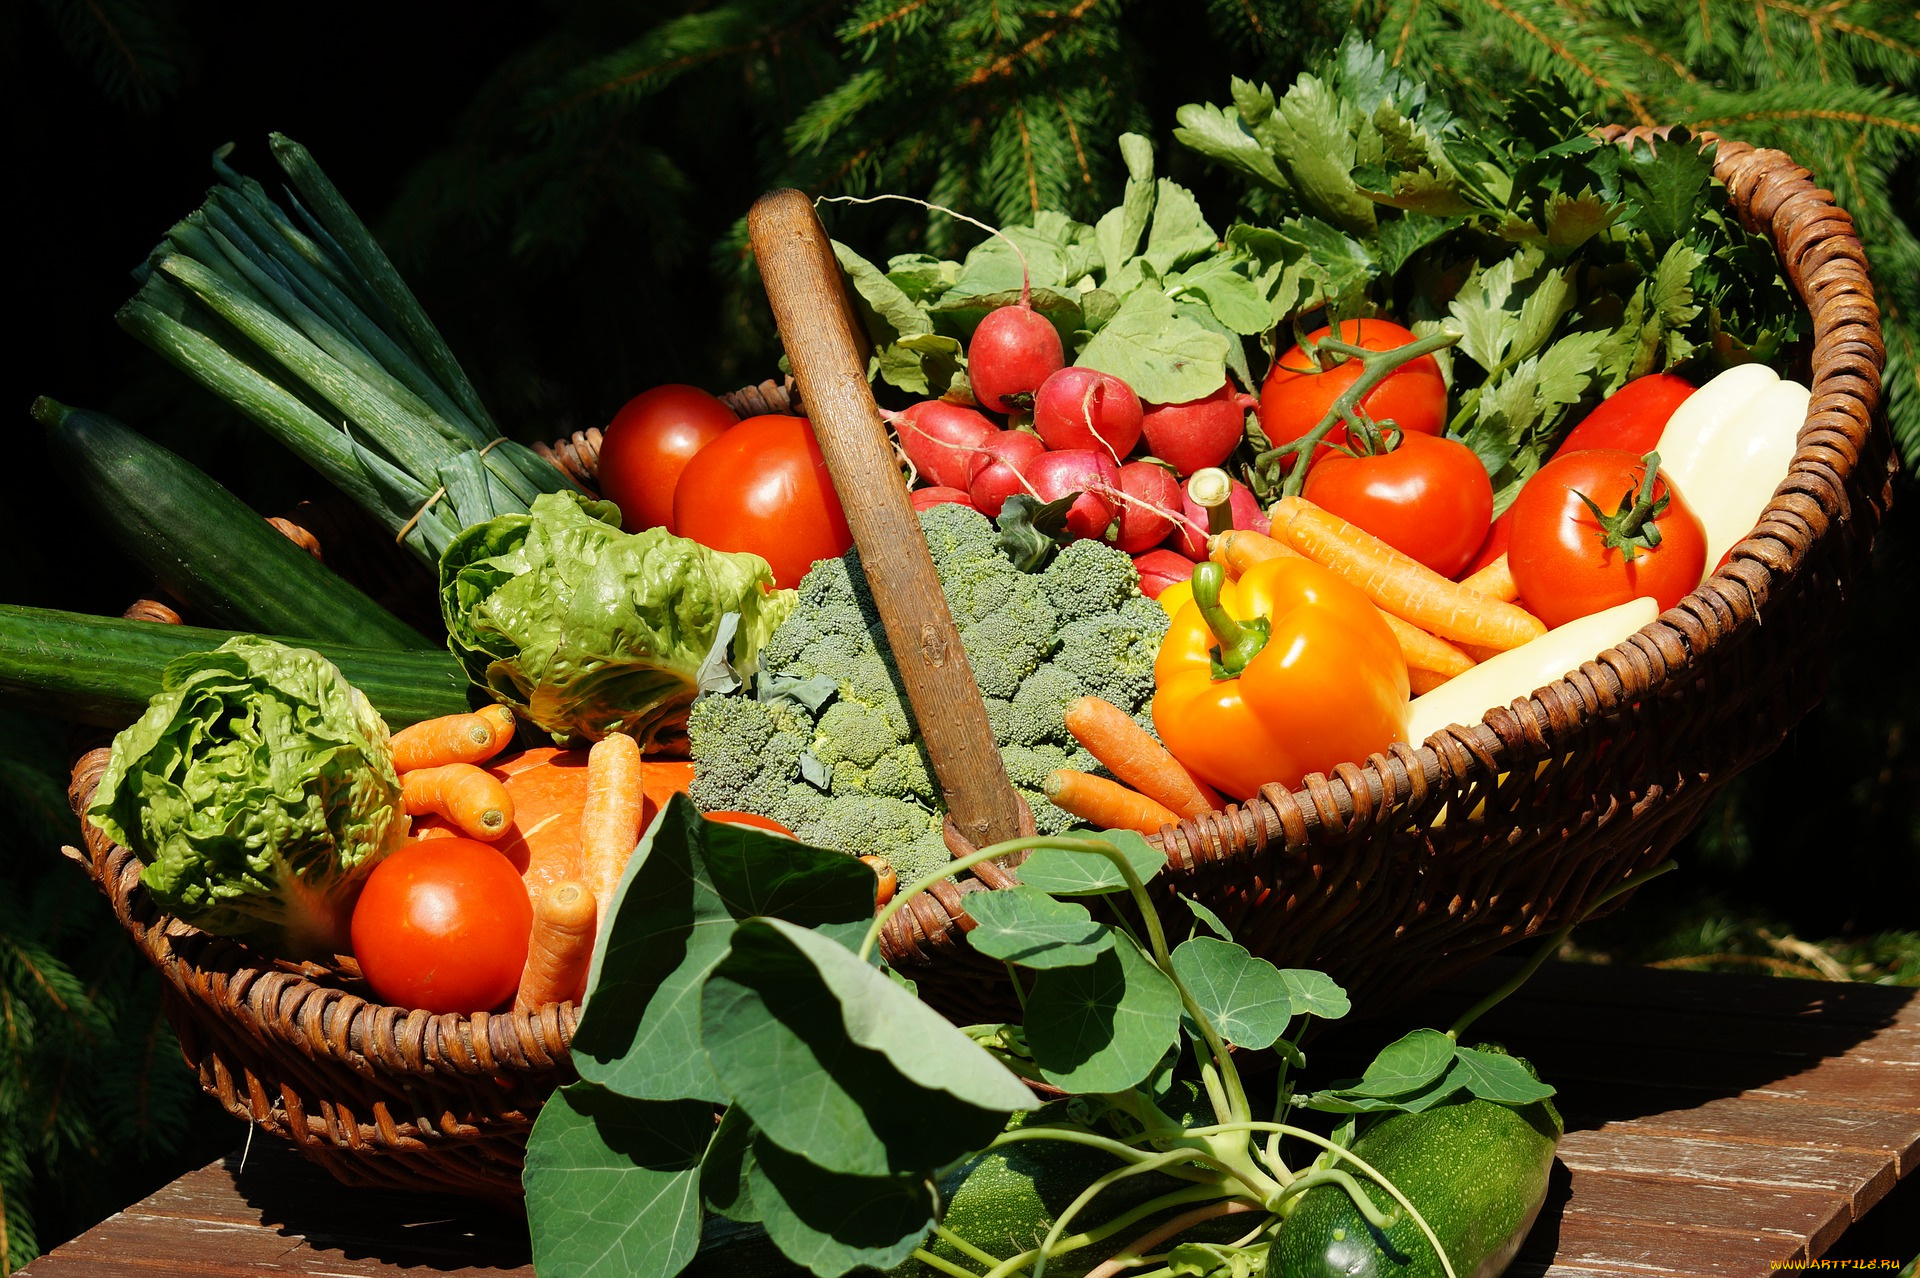 еда, овощи, огурцы, перец, зелень, помидоры, томаты, морковь, редис